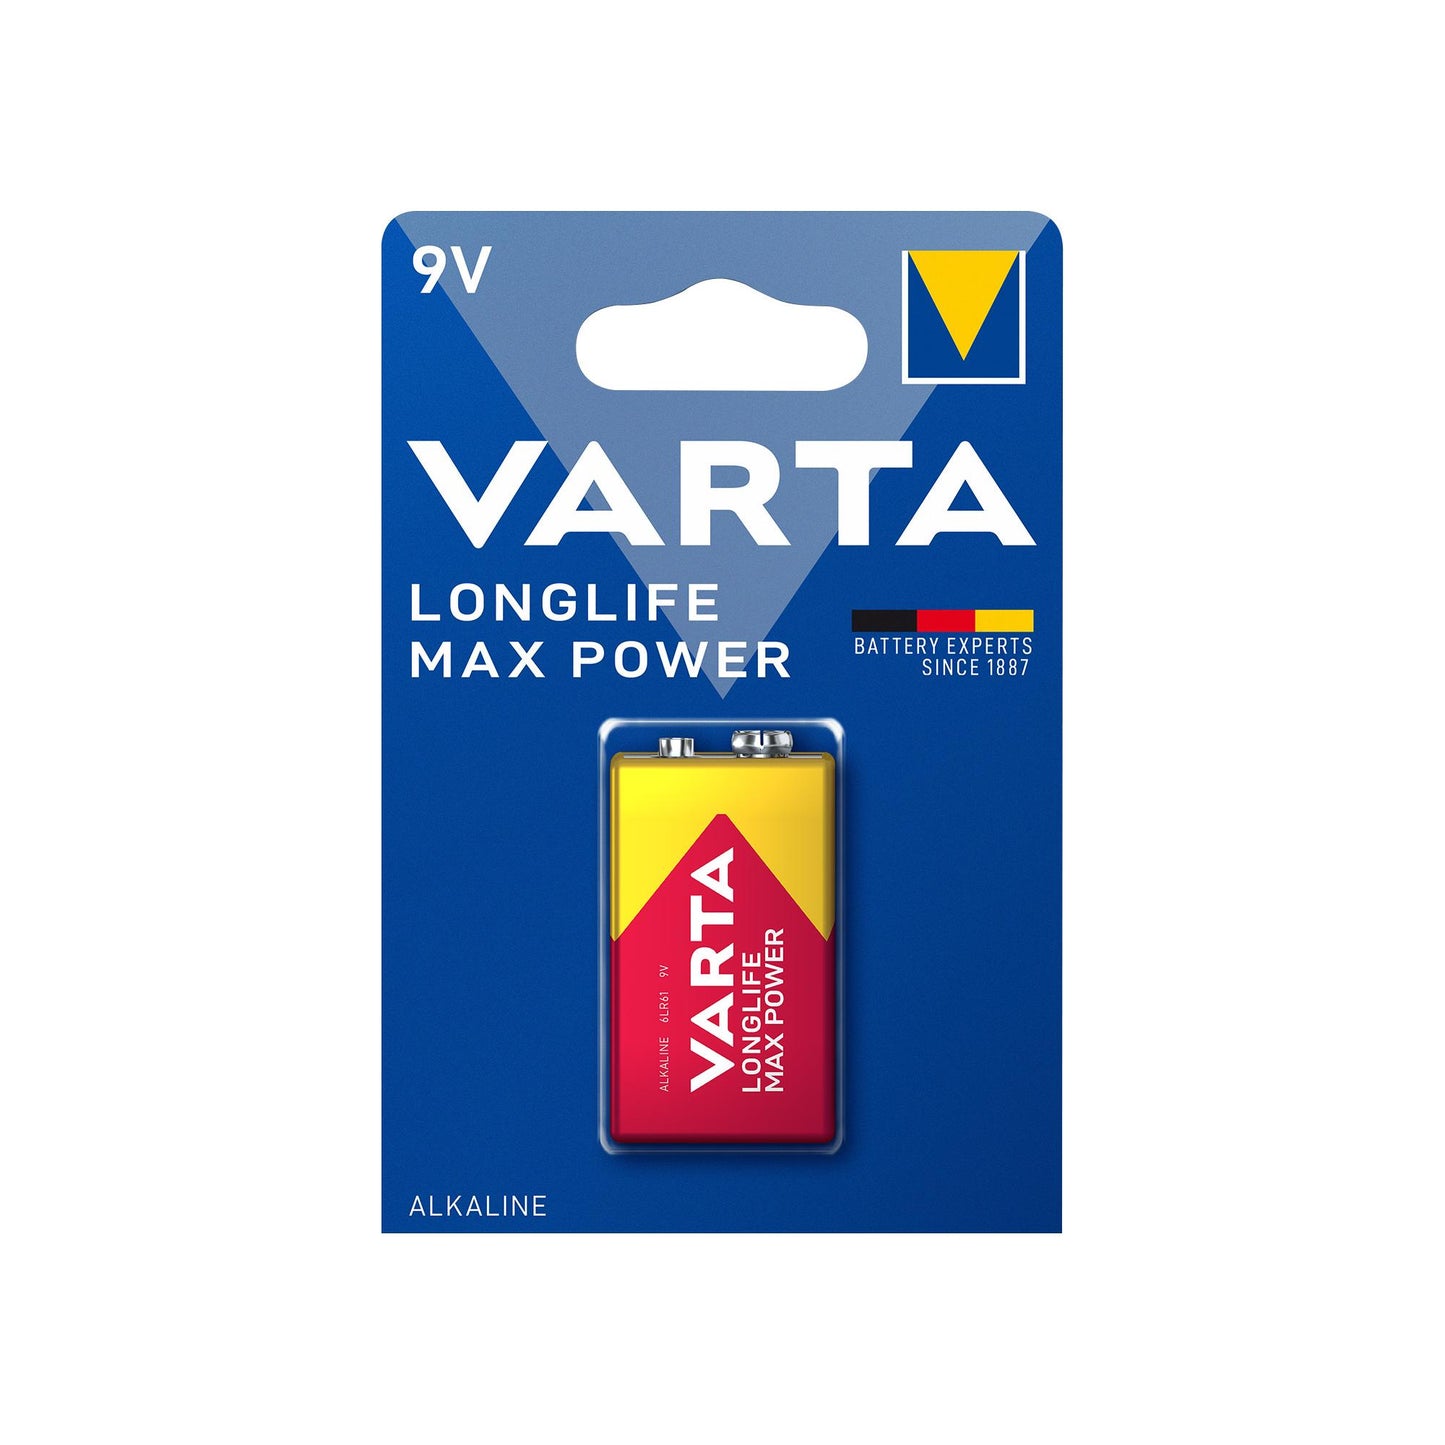 VARTA Batterie Alkaline E-Block 6LR61, 9V Longlife Max Power, Retail Blister (1-Pack)